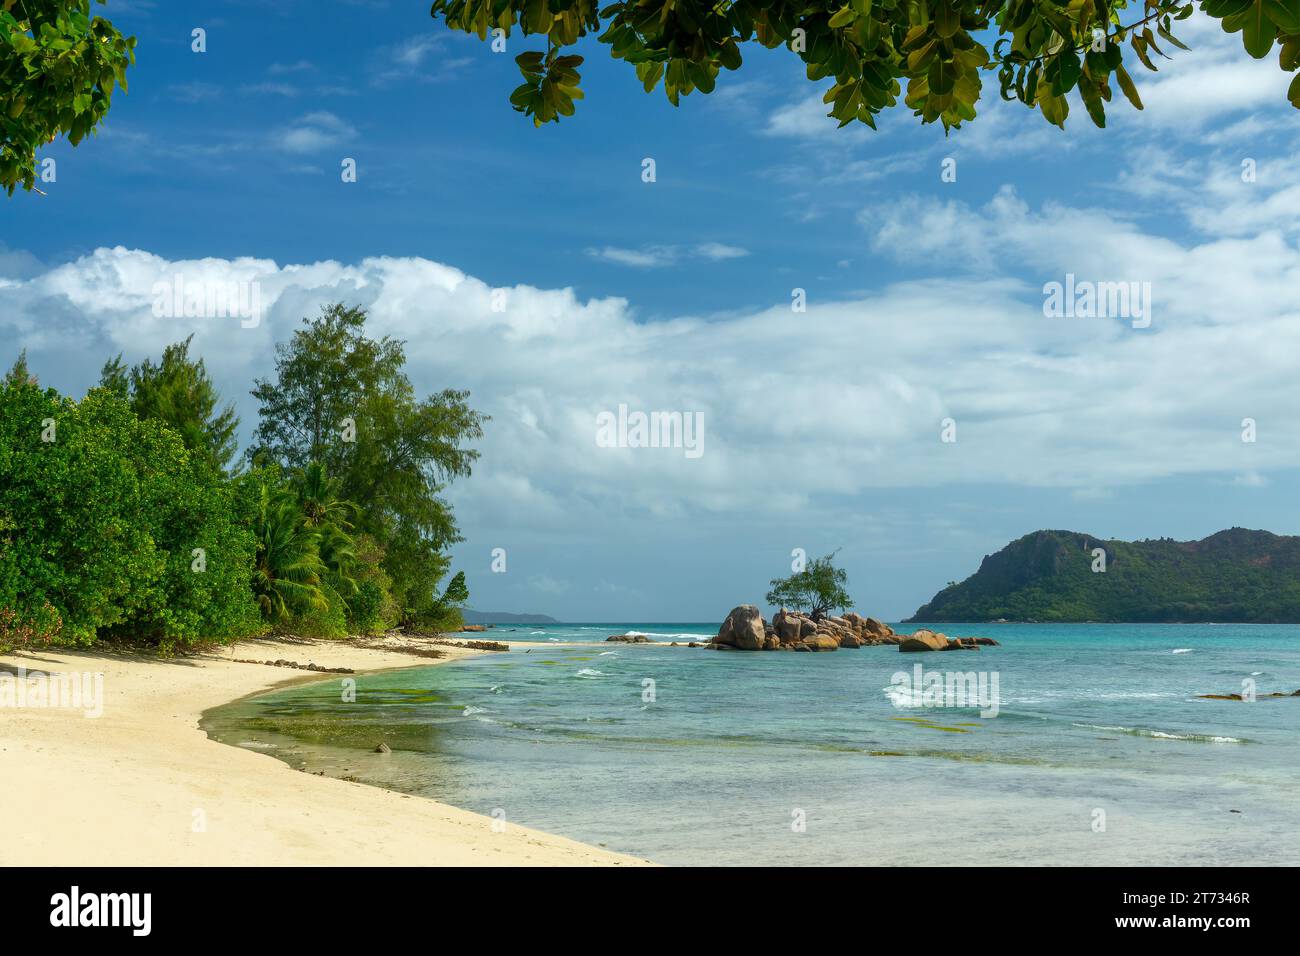 Paysage pittoresque des Seychelles sur l'île de Praslin. Île de Smoon près de la plage d'Anse Takamaka Banque D'Images